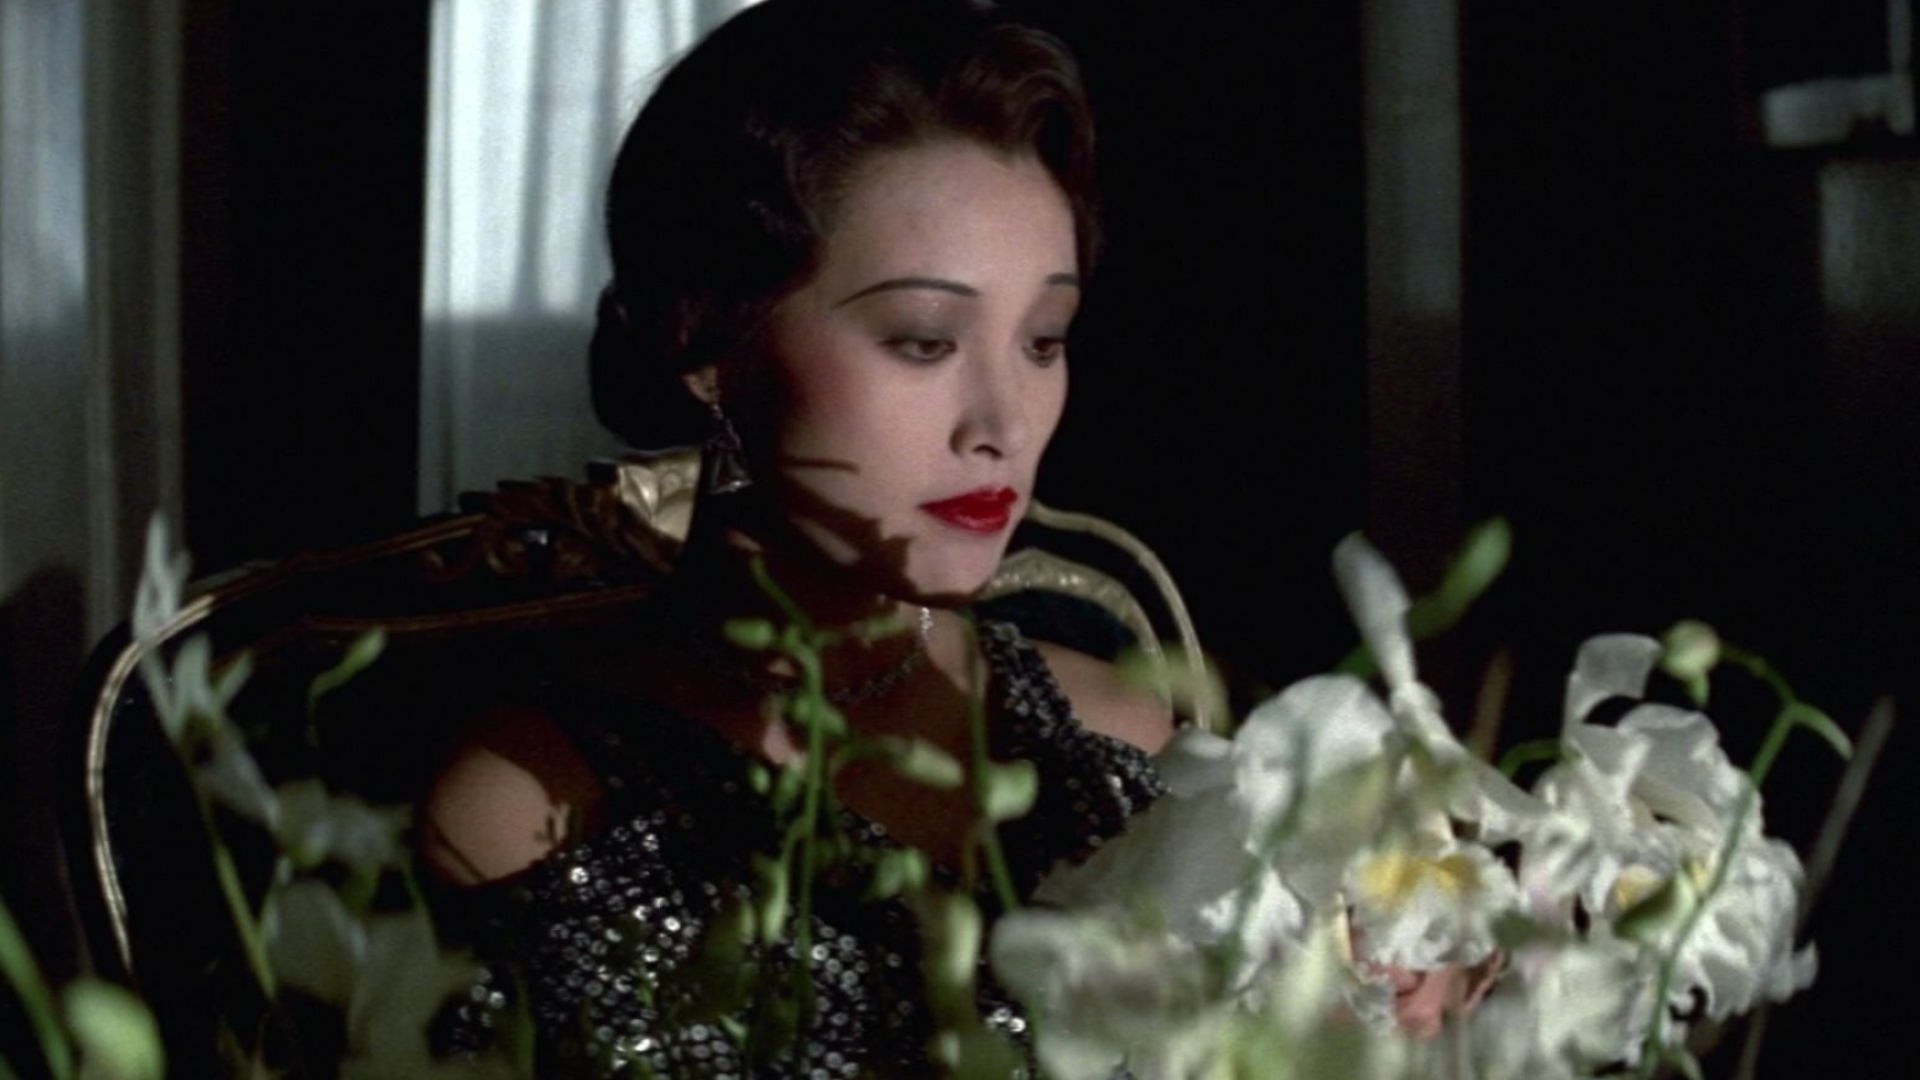 The Last Emperor (1987), Joan Chen, Red carpet beauty, 1920x1080 Full HD Desktop